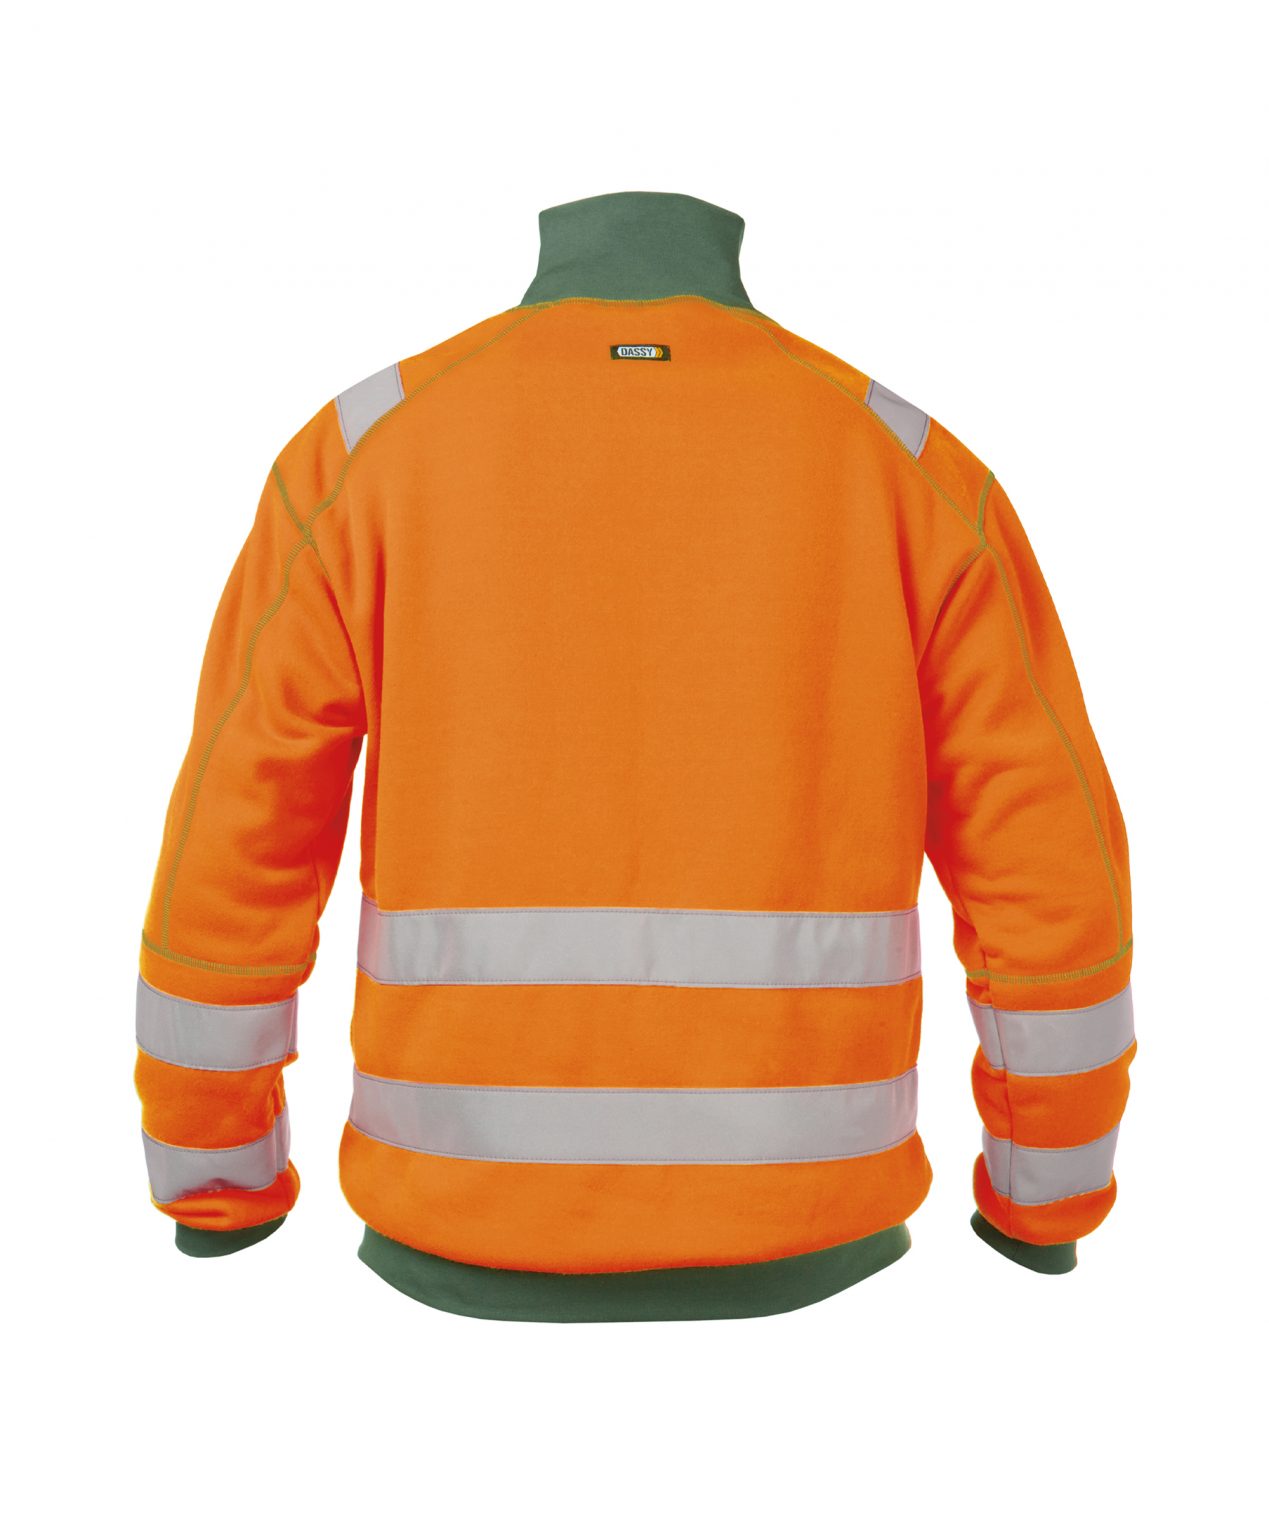 denver high visibility sweatshirt fluo orange bottle green back